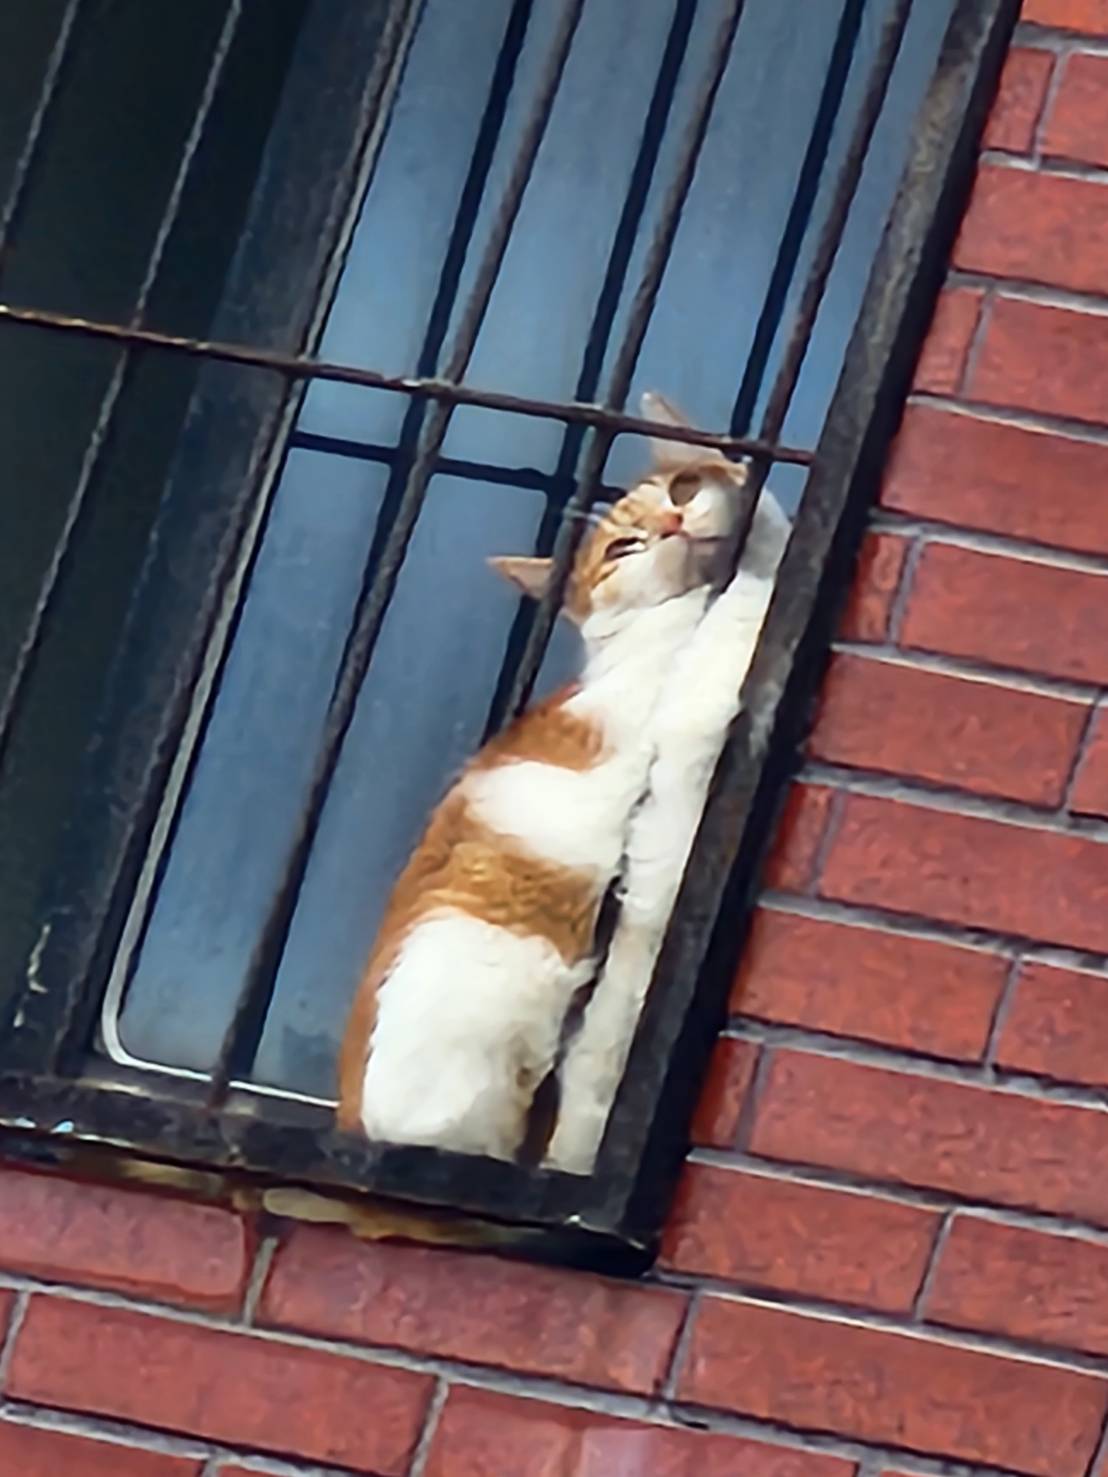 工作人員發現夾在鐵窗的橘貓。圖/取自花蓮縣消防隊《臉書》粉專